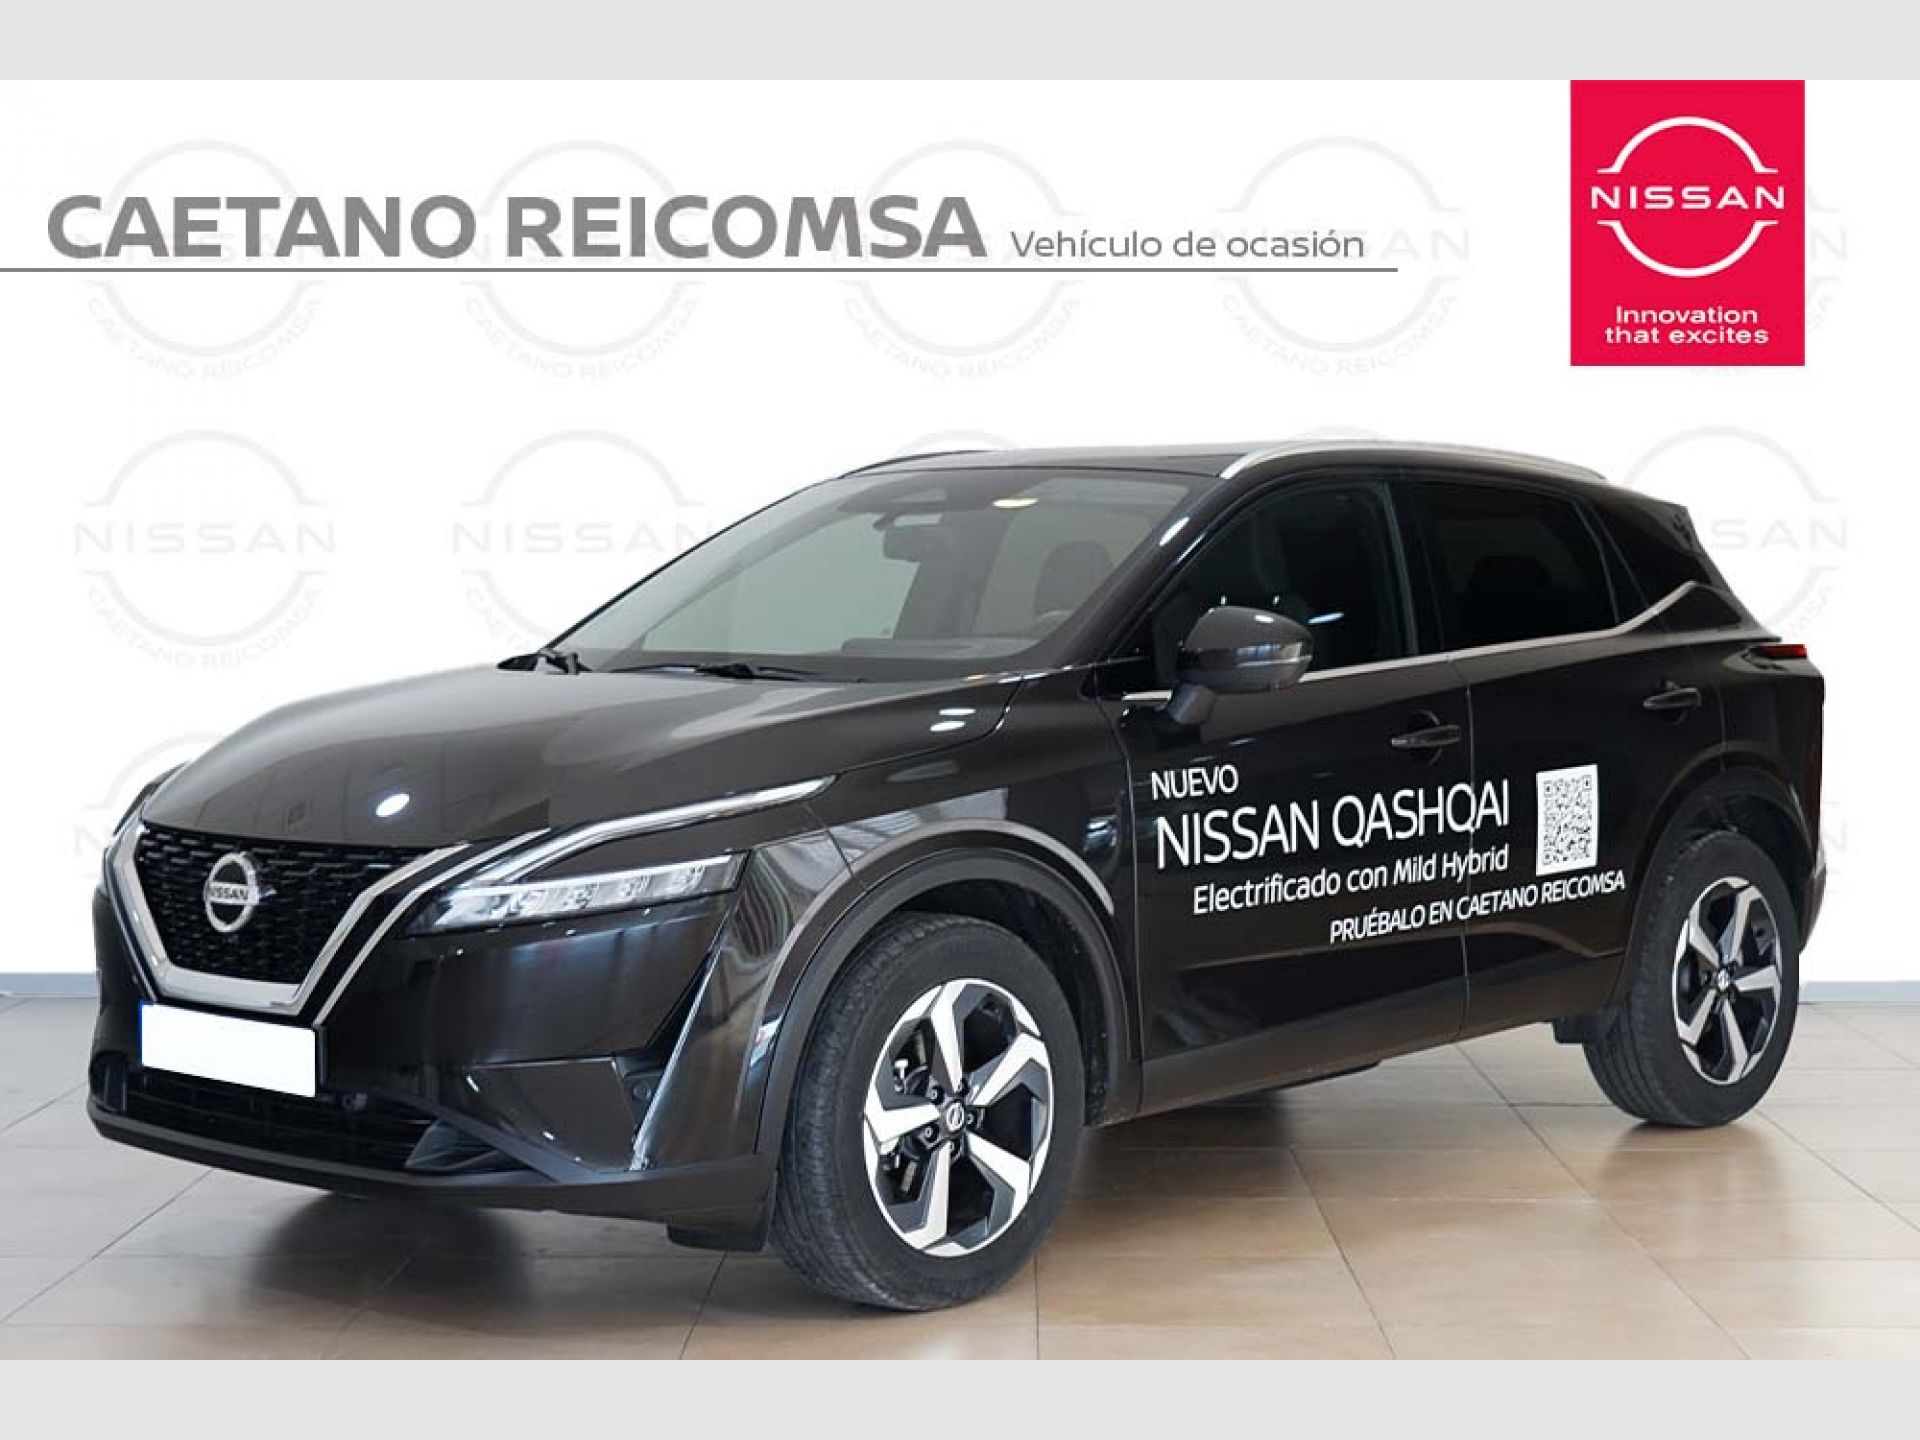 Nissan Qashqai DIG-T 103kW (140CV) mHEV 4x2 N-Connecta 2021 kms Midnight Black (metalizado) segunda mano Madrid (1497) | Caetano Cuzco